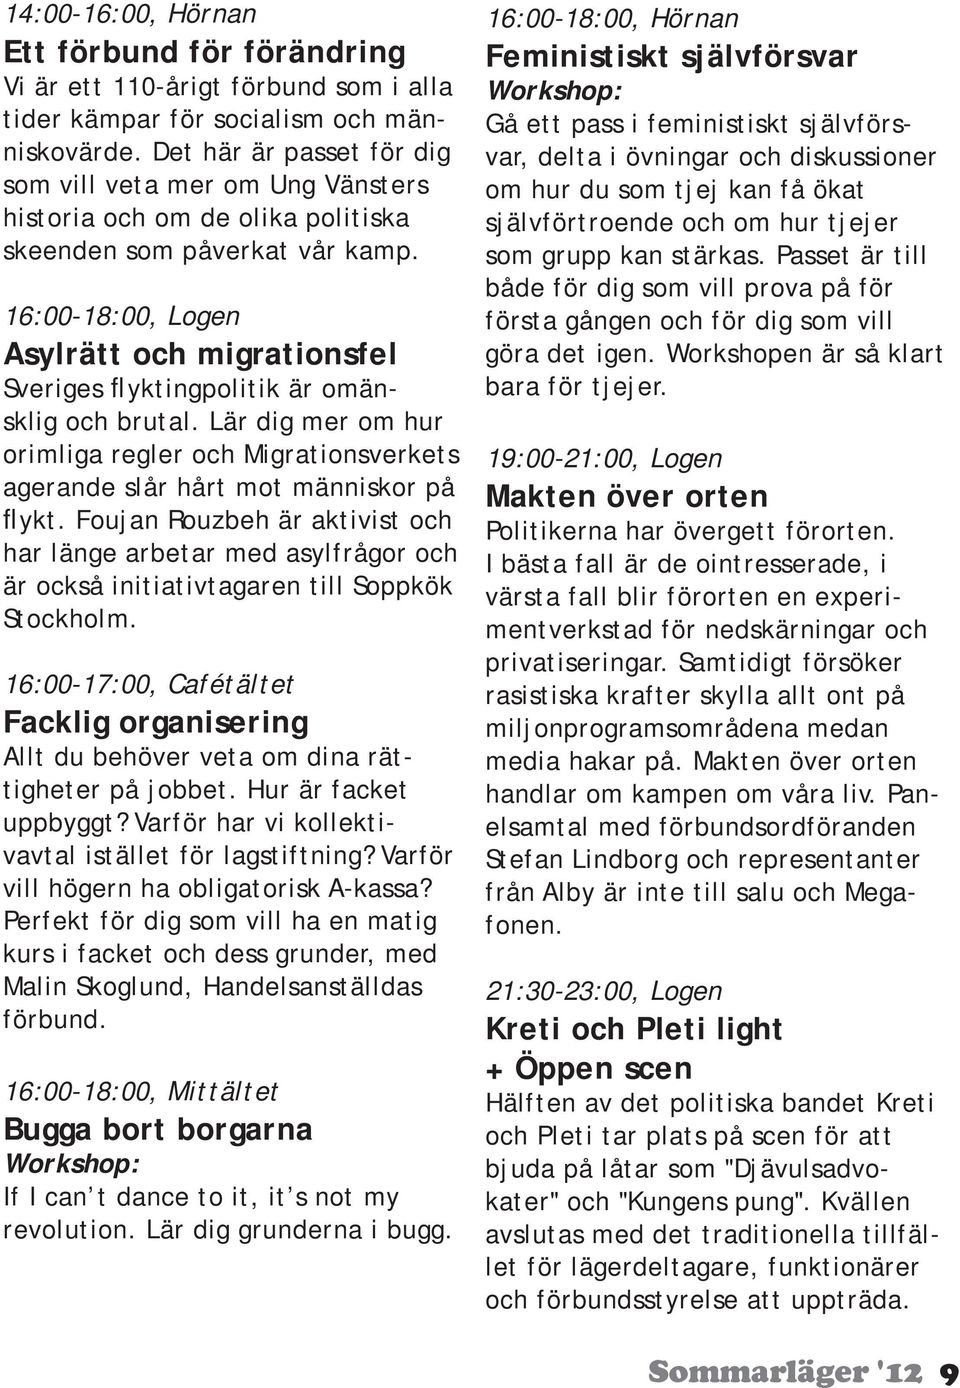 16:00-18:00, Logen Asylrätt och migrationsfel Sveriges flyktingpolitik är omänsklig och brutal. Lär dig mer om hur orimliga regler och Migrationsverkets agerande slår hårt mot människor på flykt.